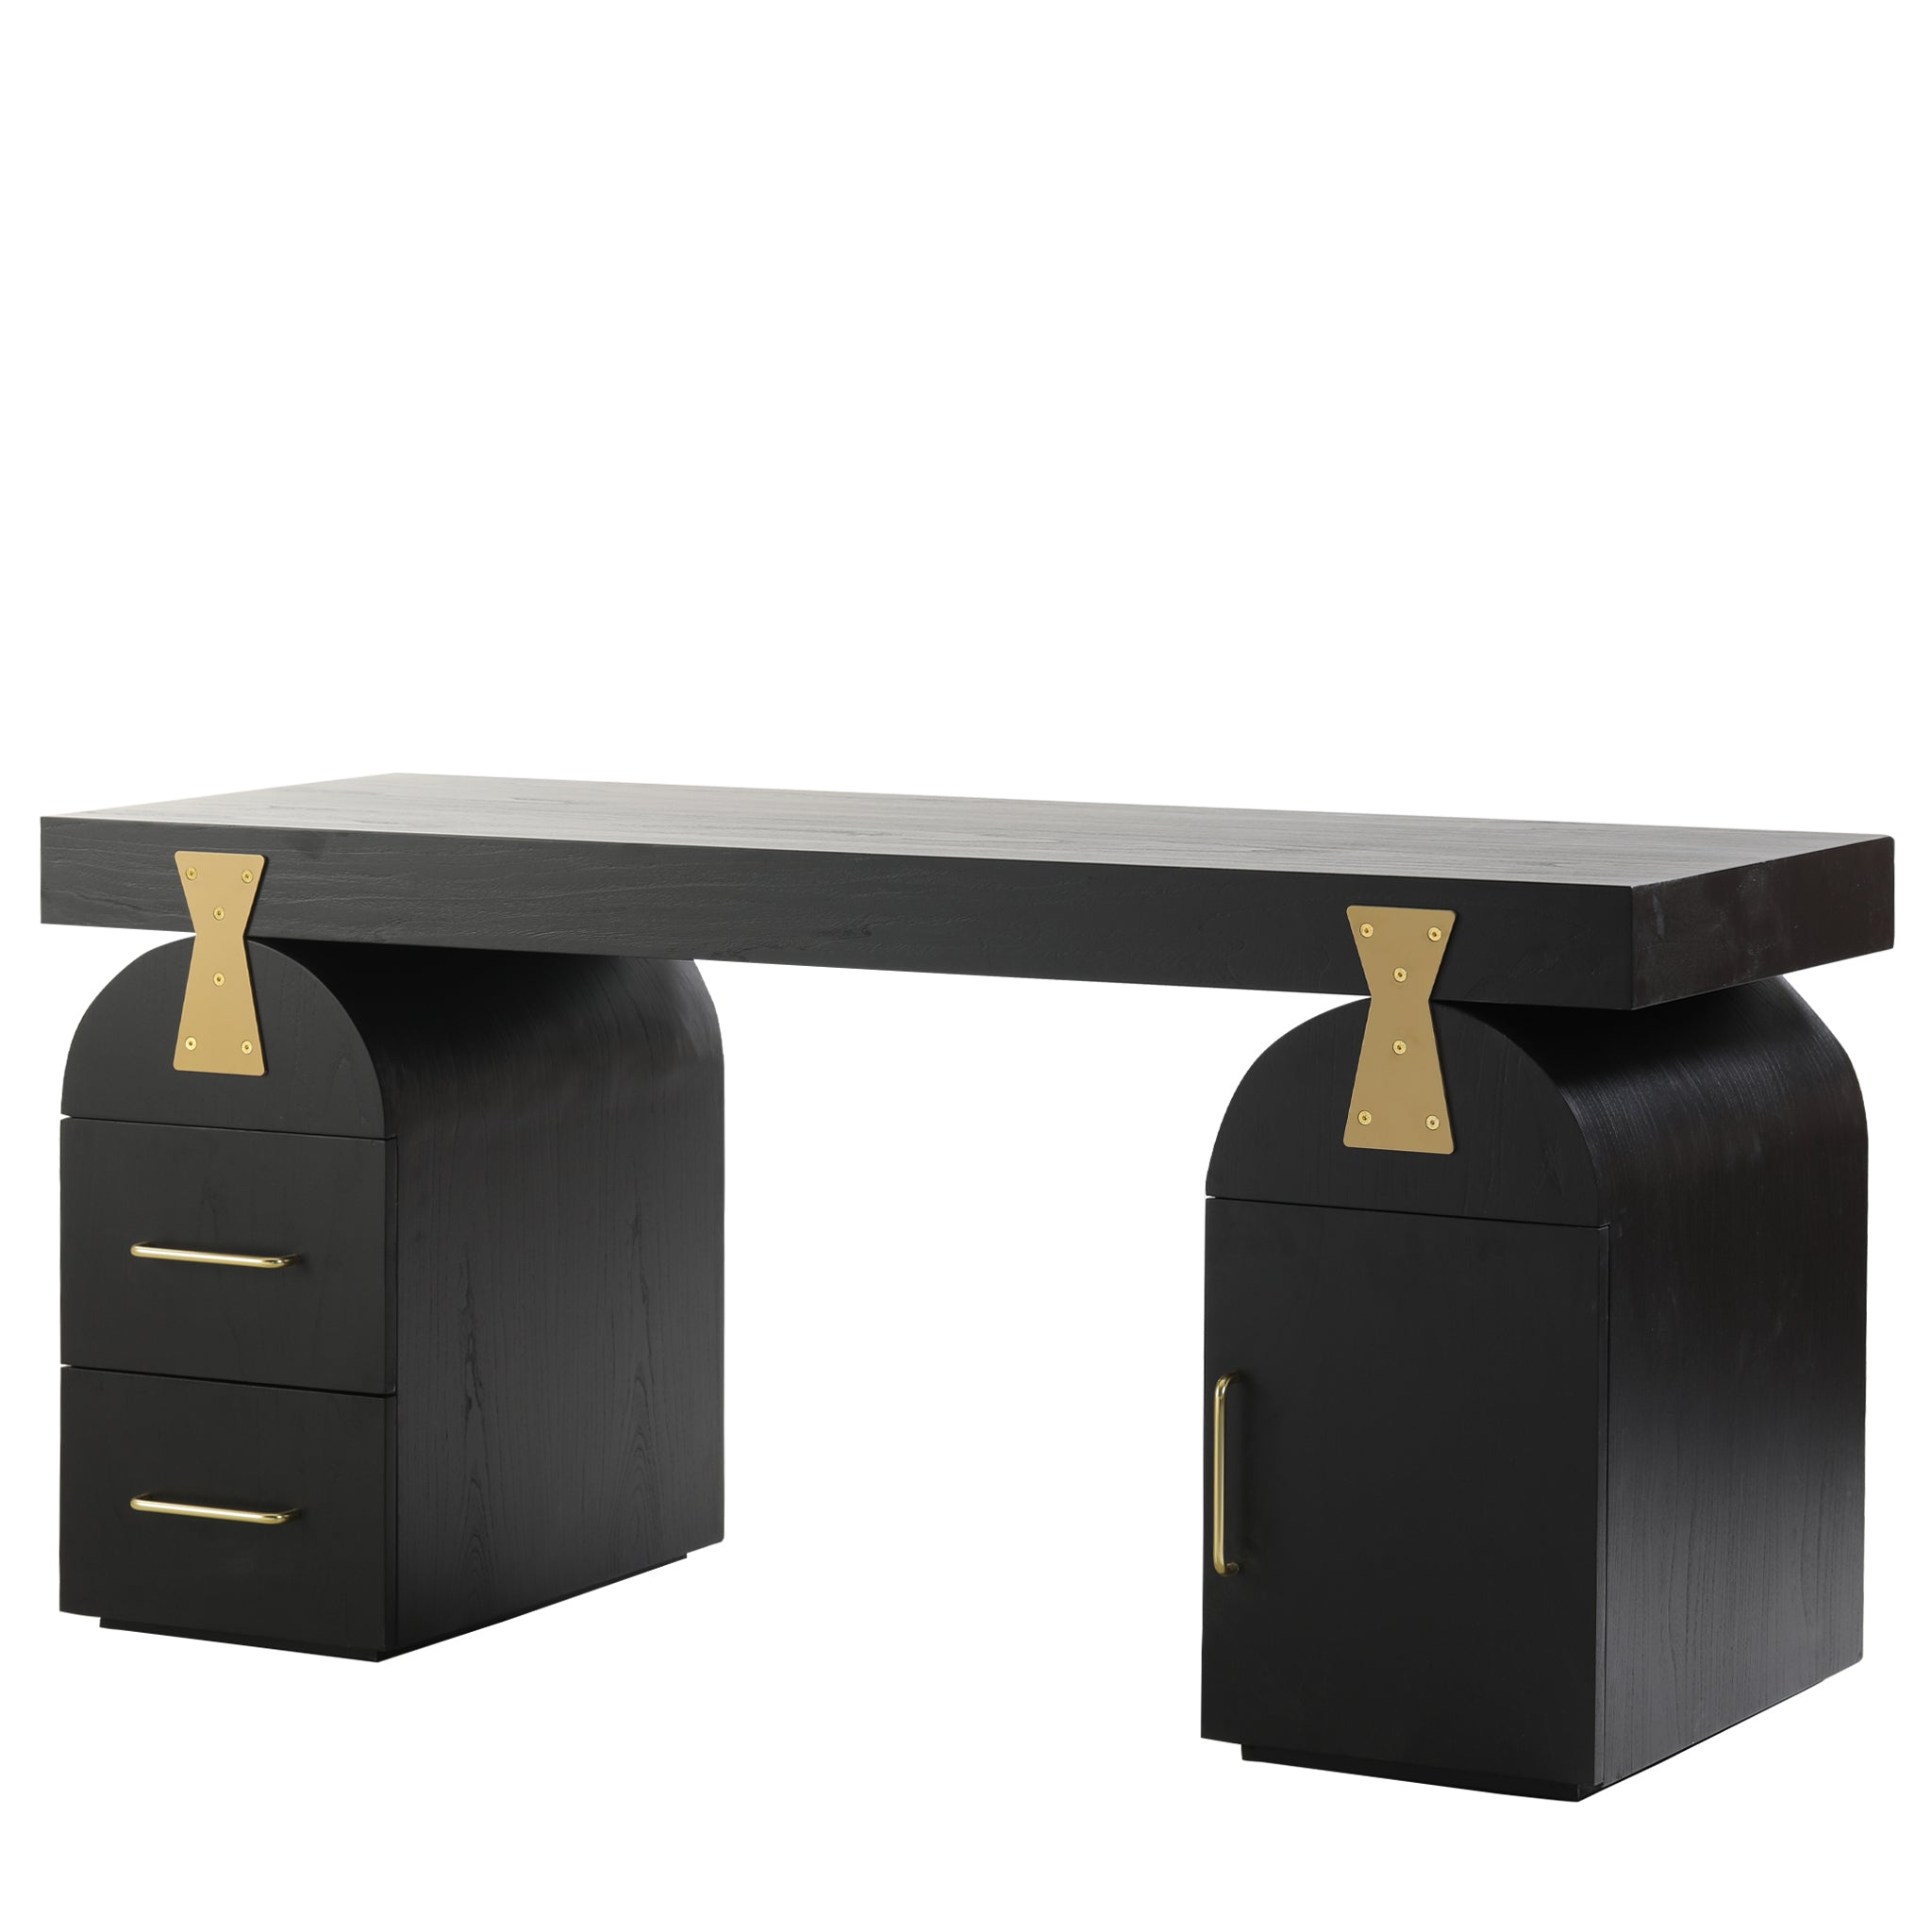 Broady 1.55m New Elm Home Office Desk - Full Black